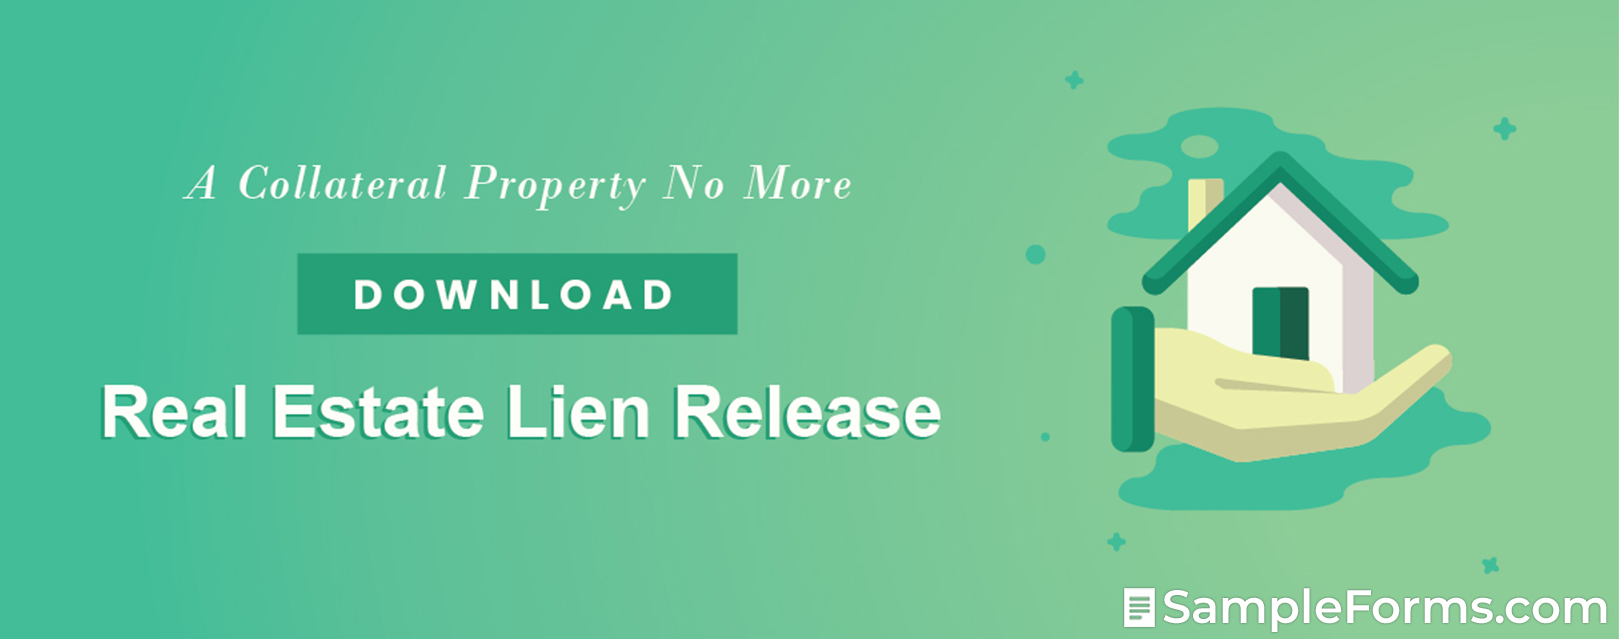 Real Estate Lien Release